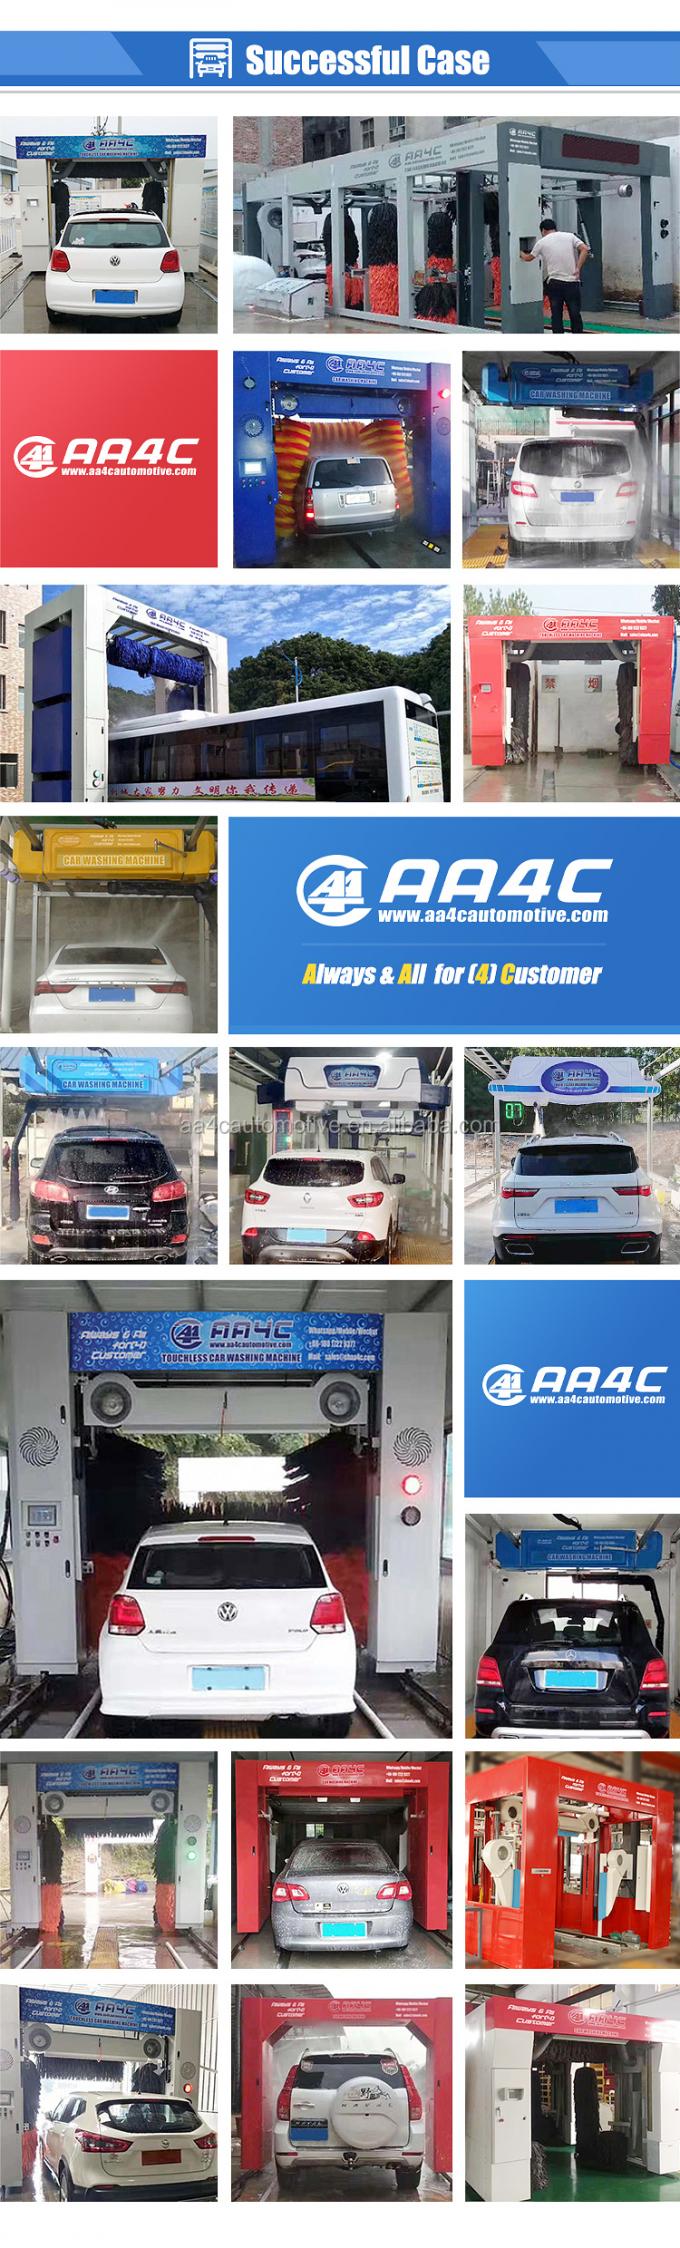 Der Tunnelwaschanlagemaschine 9 AA4C automatisches Bürstenautowaschmaschinensystemauto-Waschmaschinensystem AA-CW9